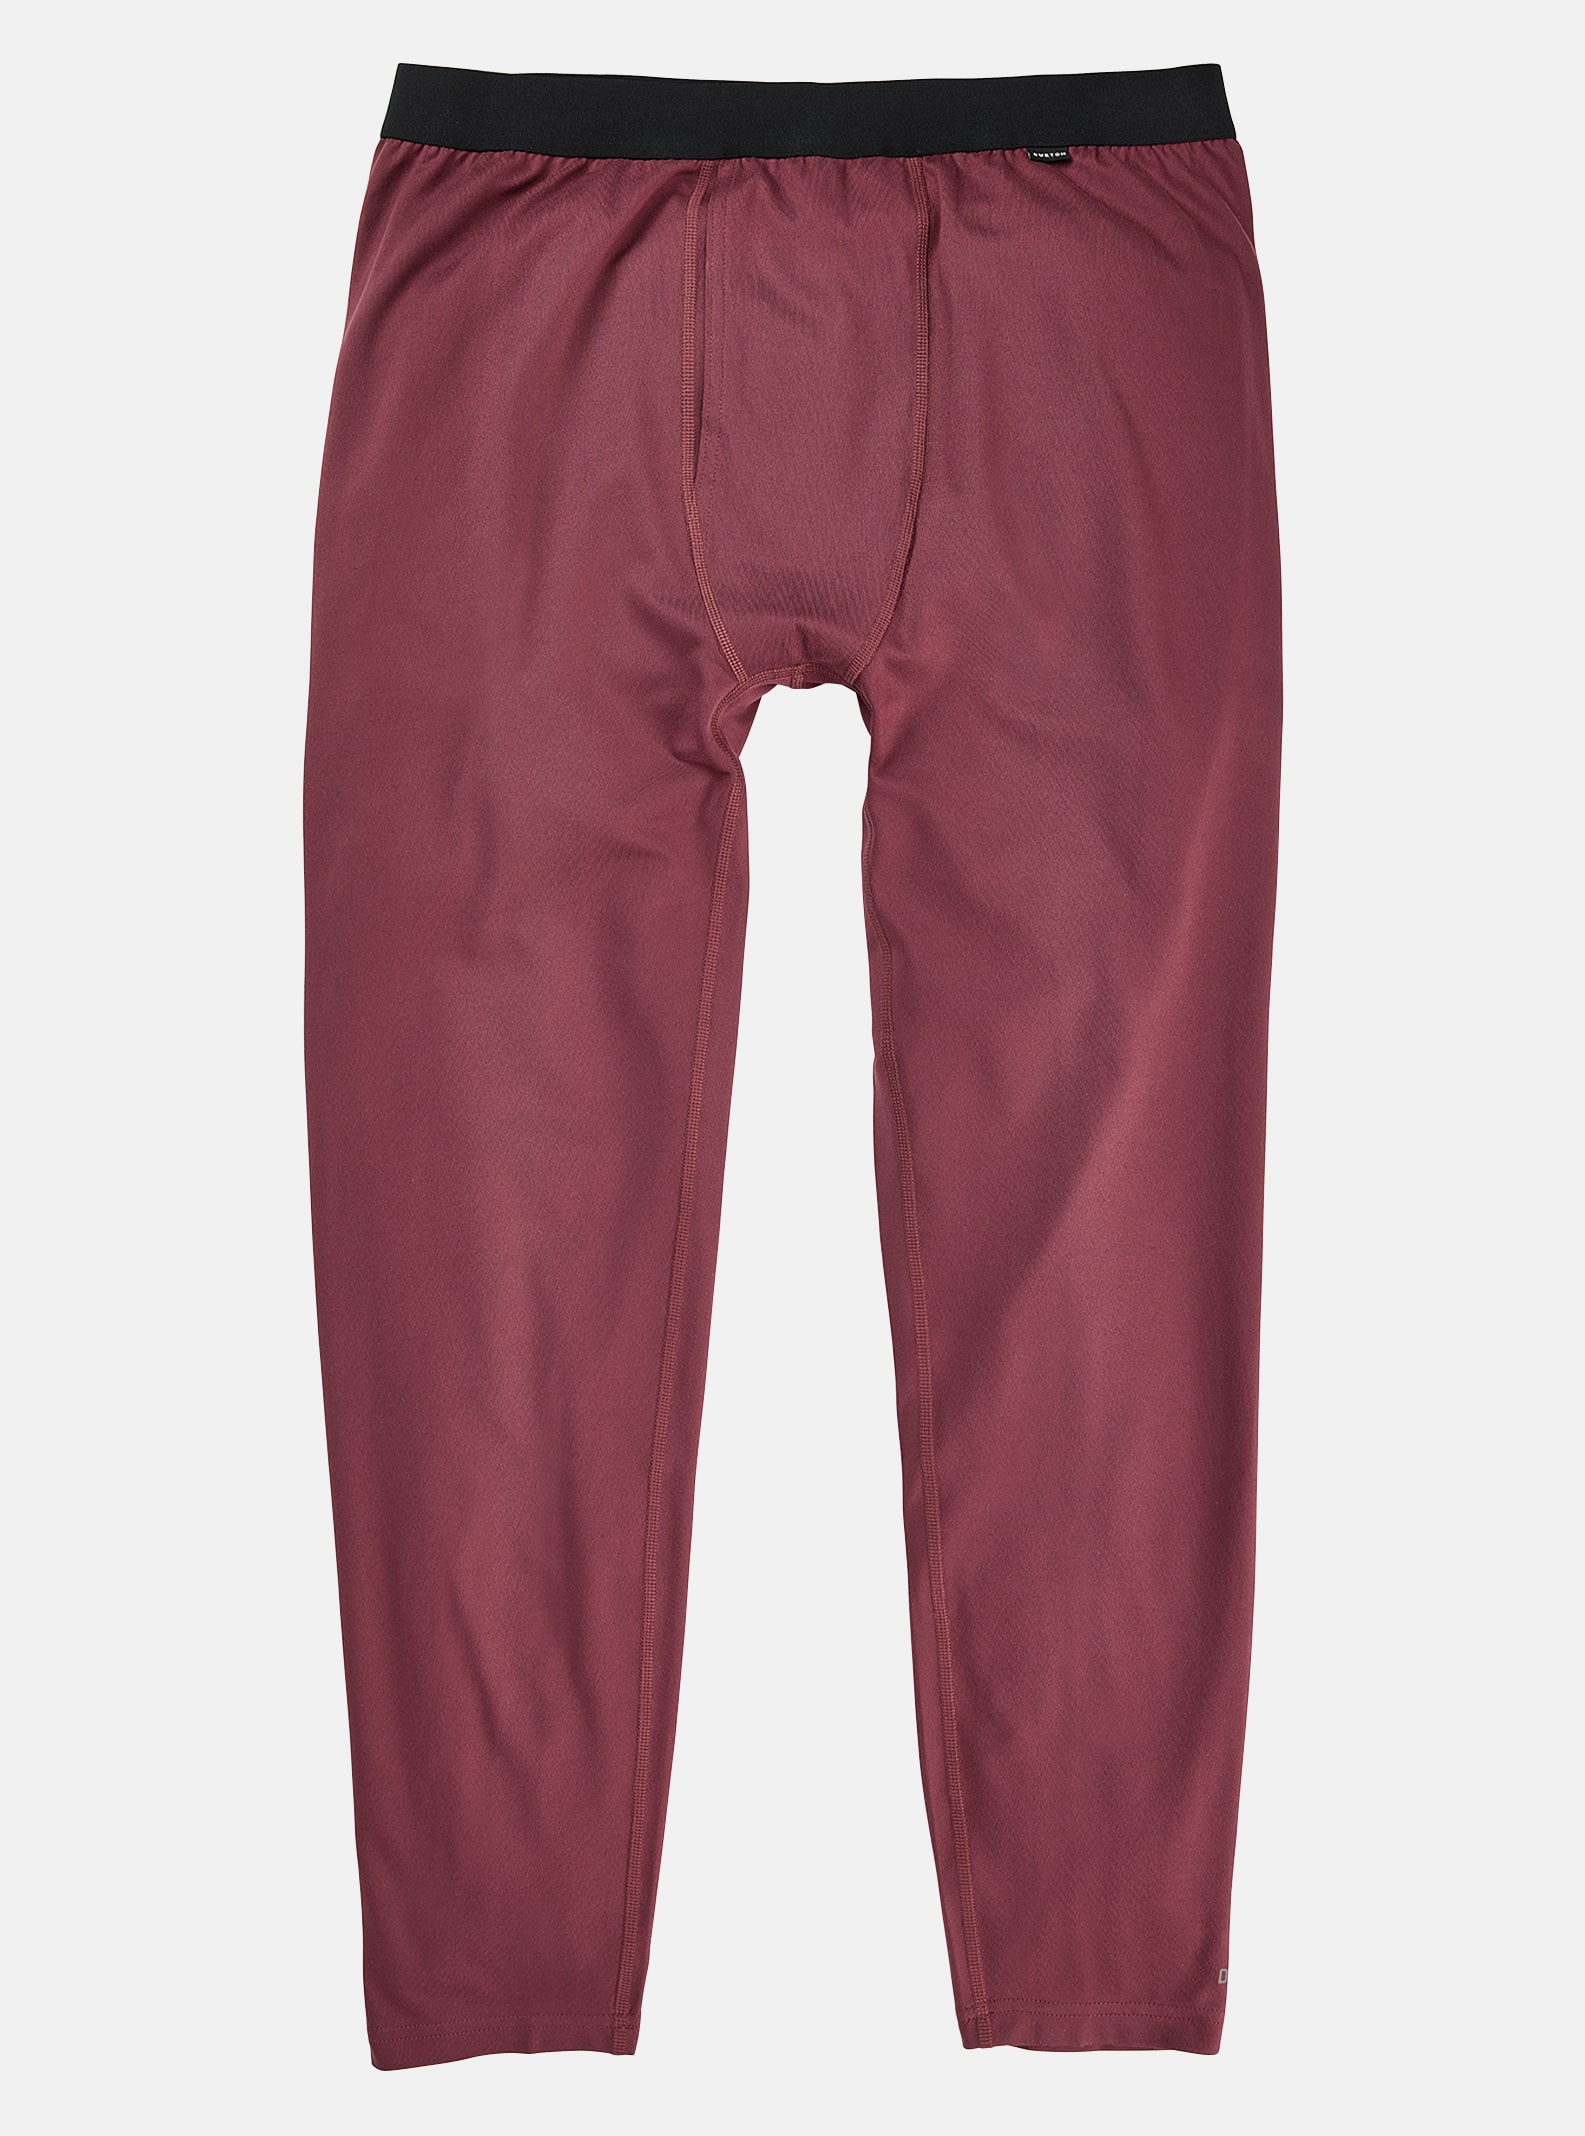 Burton - Pantalon sous-vêtement intermédiaire homme, Almandine, M